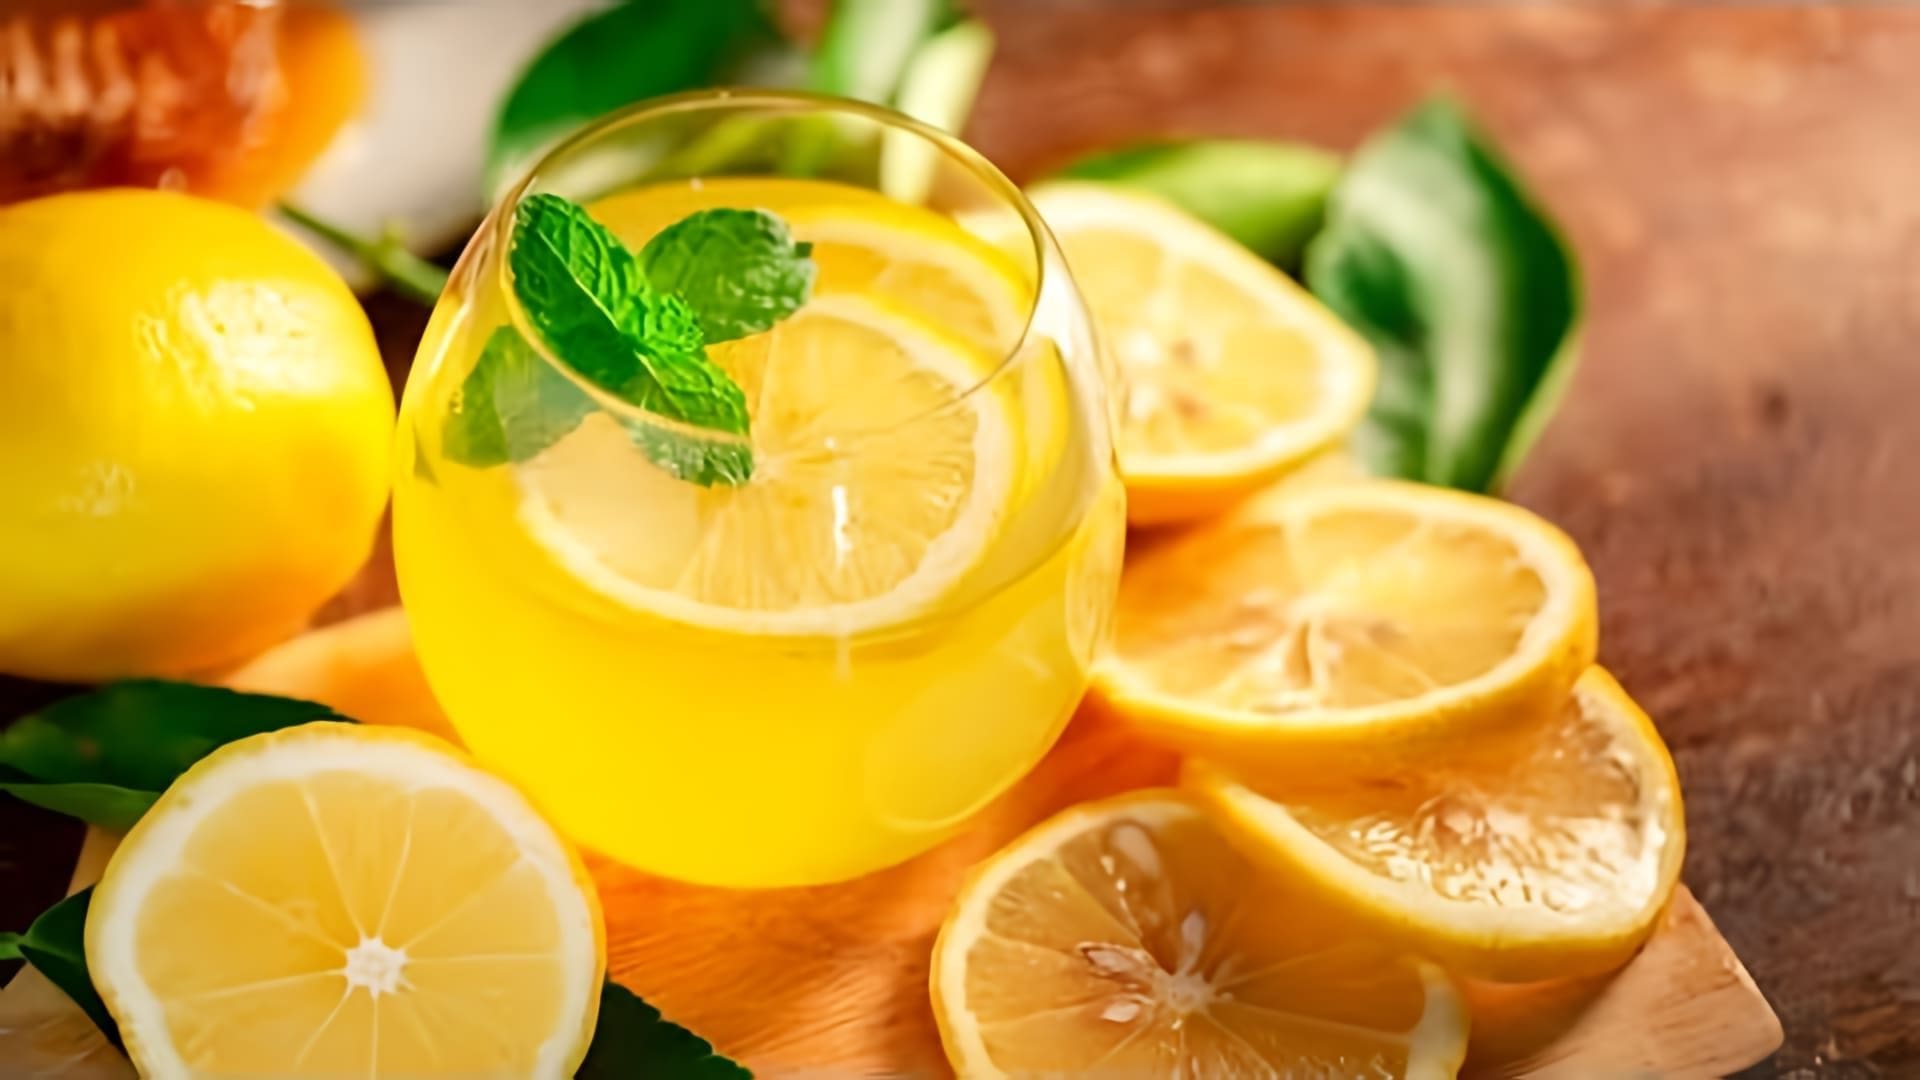 В этом видео демонстрируется рецепт домашнего лимонада, который можно приготовить в жаркую погоду